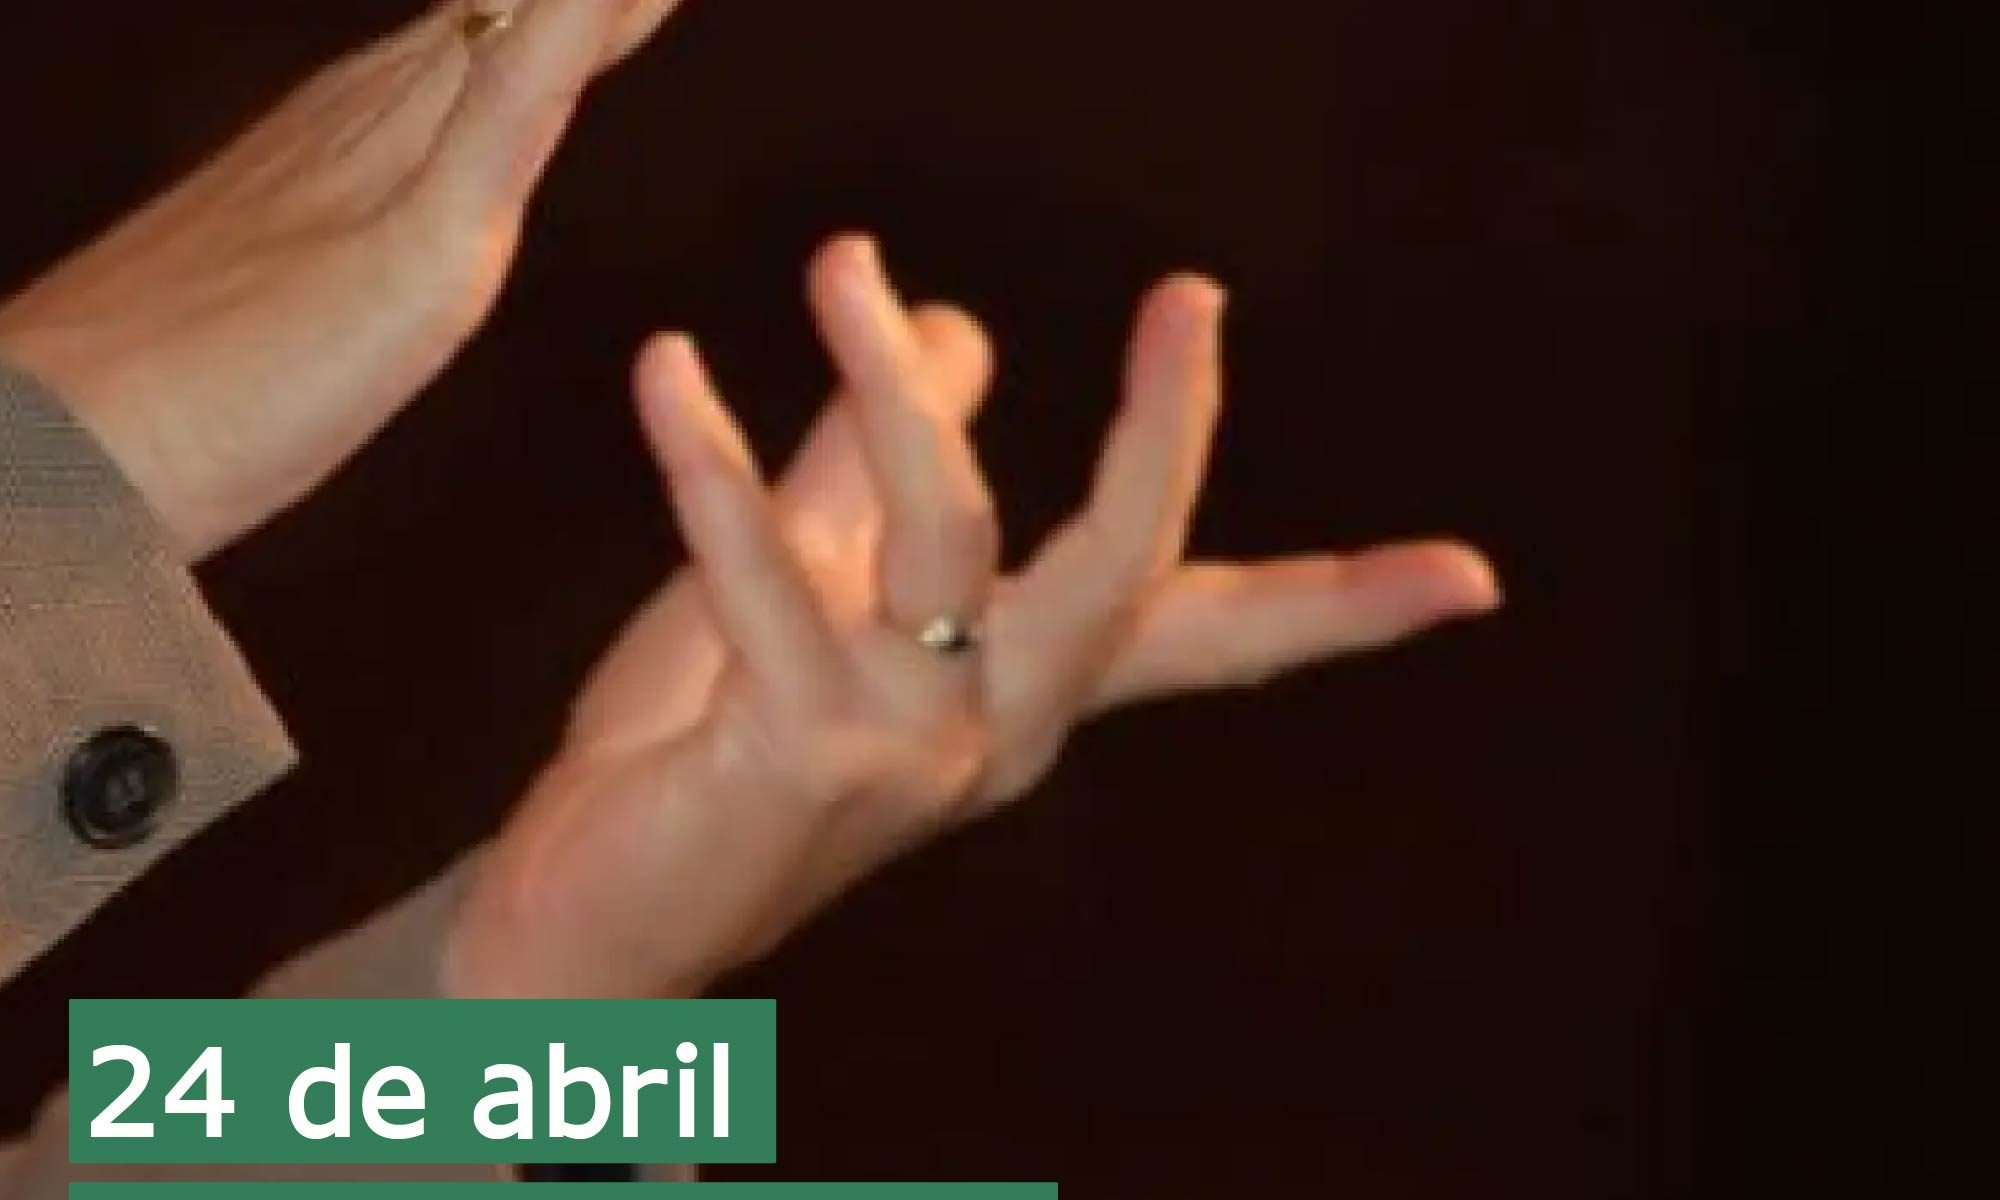 imagem de fundo escuro com duas mãos fazendo sinalização. Está escrito: "24 de abril Dia Nacional da Língua Brasileira de Sinais" e há a logo da Retina Brasil.